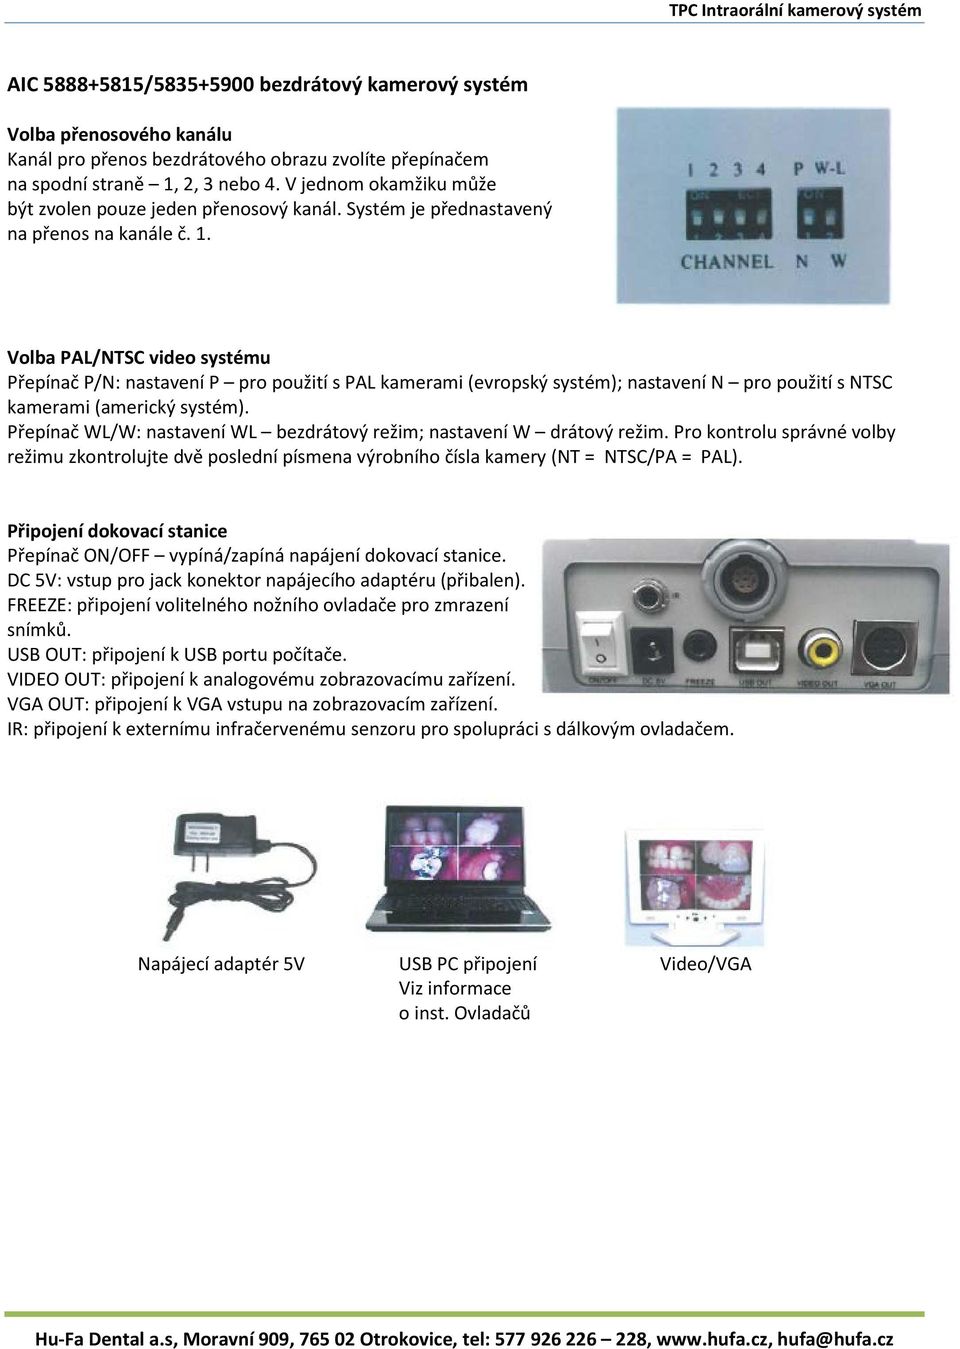 Volba PAL/NTSC video systému Přepínač P/N: nastavení P pro použití s PAL kamerami (evropský systém); nastavení N pro použití s NTSC kamerami (americký systém).